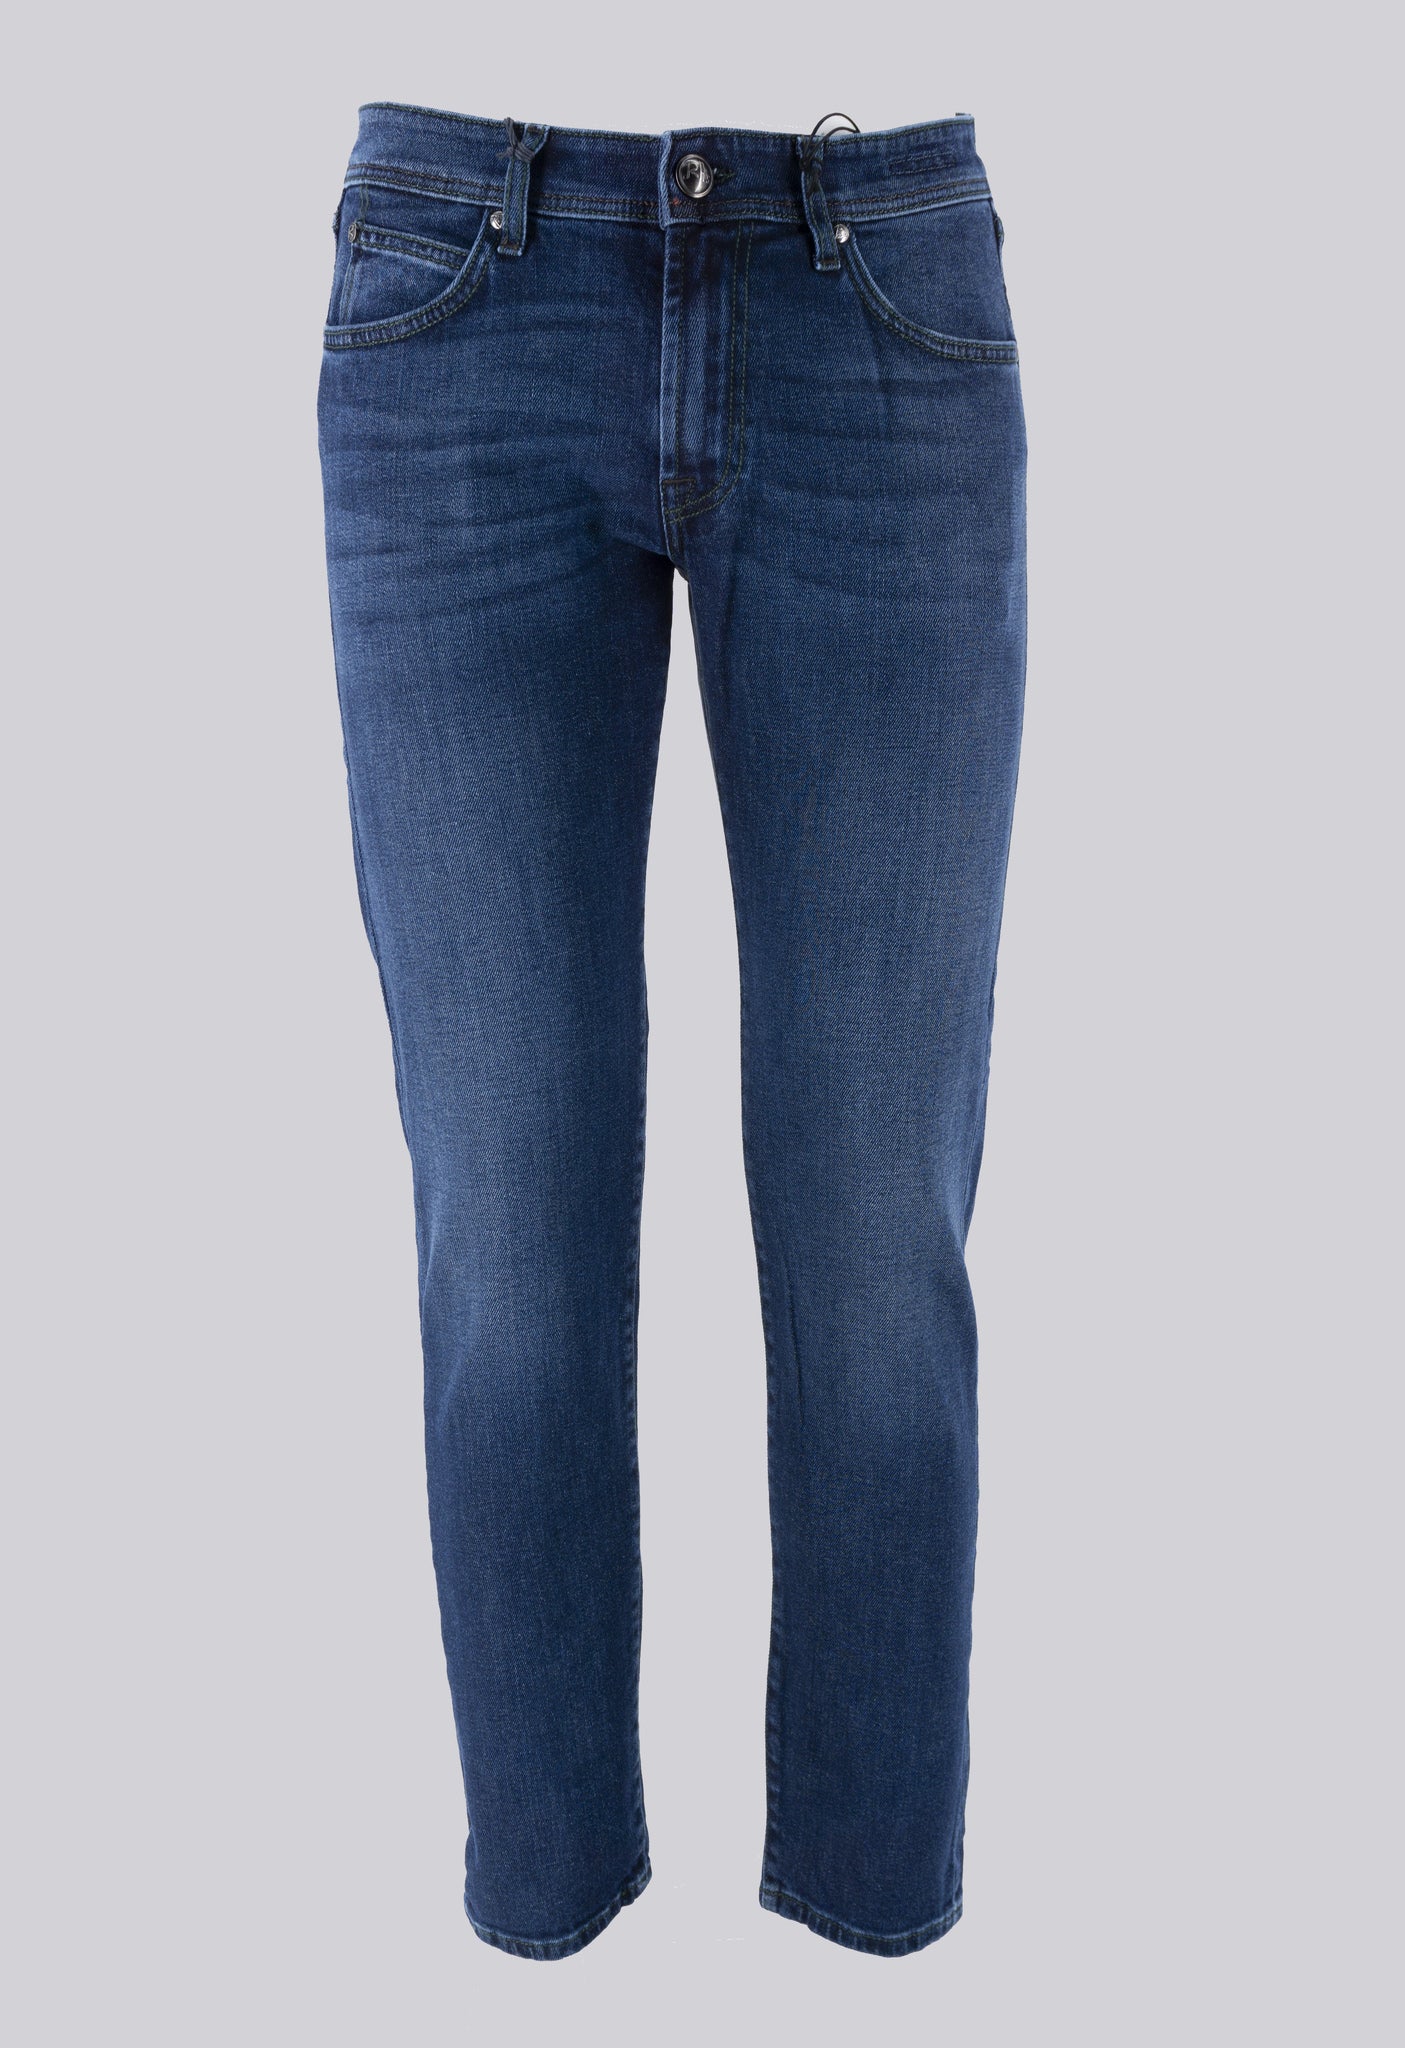 Jeans Lavaggio Chiaro Novalencia / Jeans - Ideal Moda